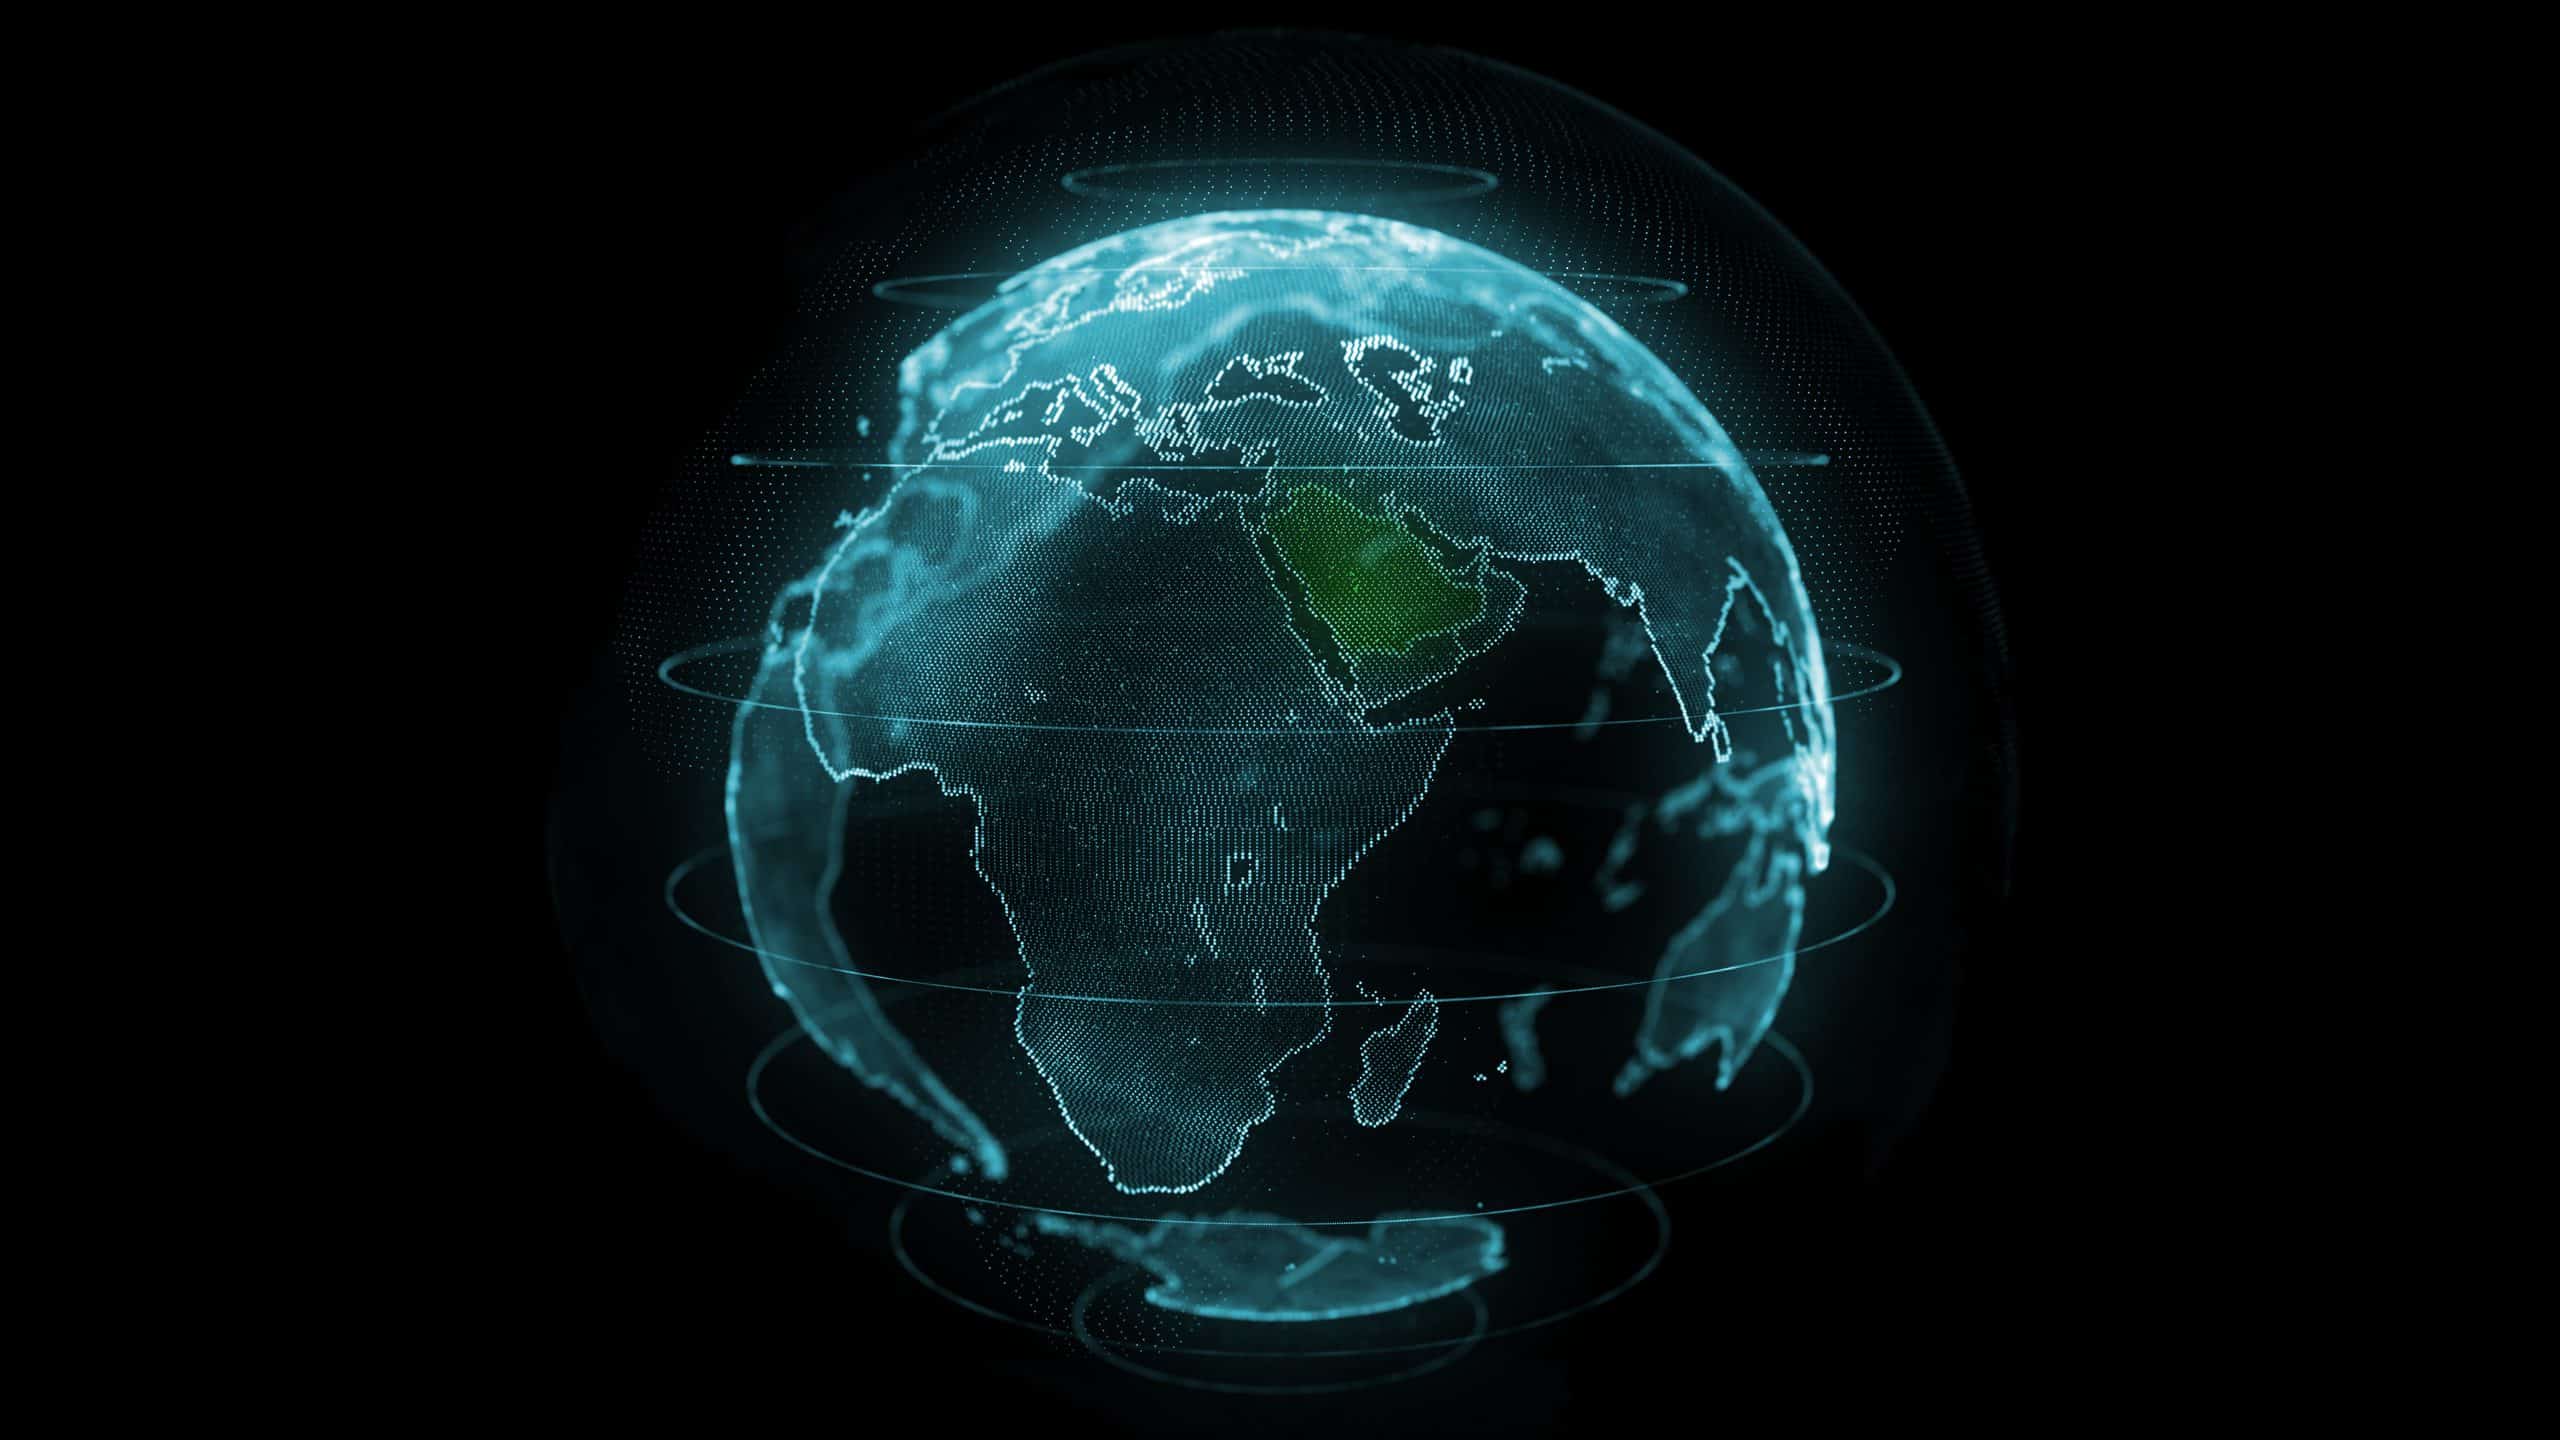 KSA globe image scaled